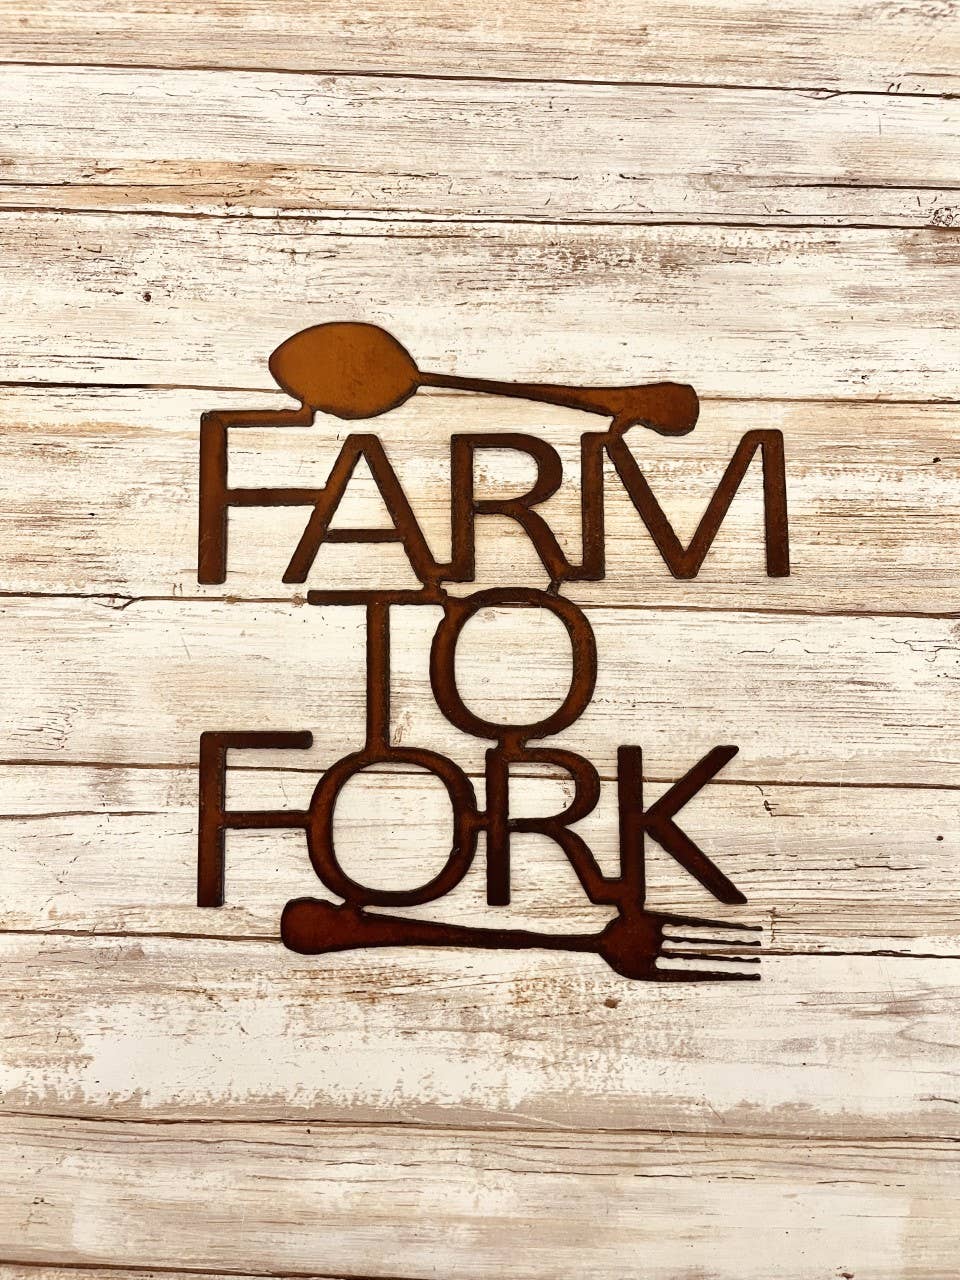 Farm to Fork Western farmhouse sign